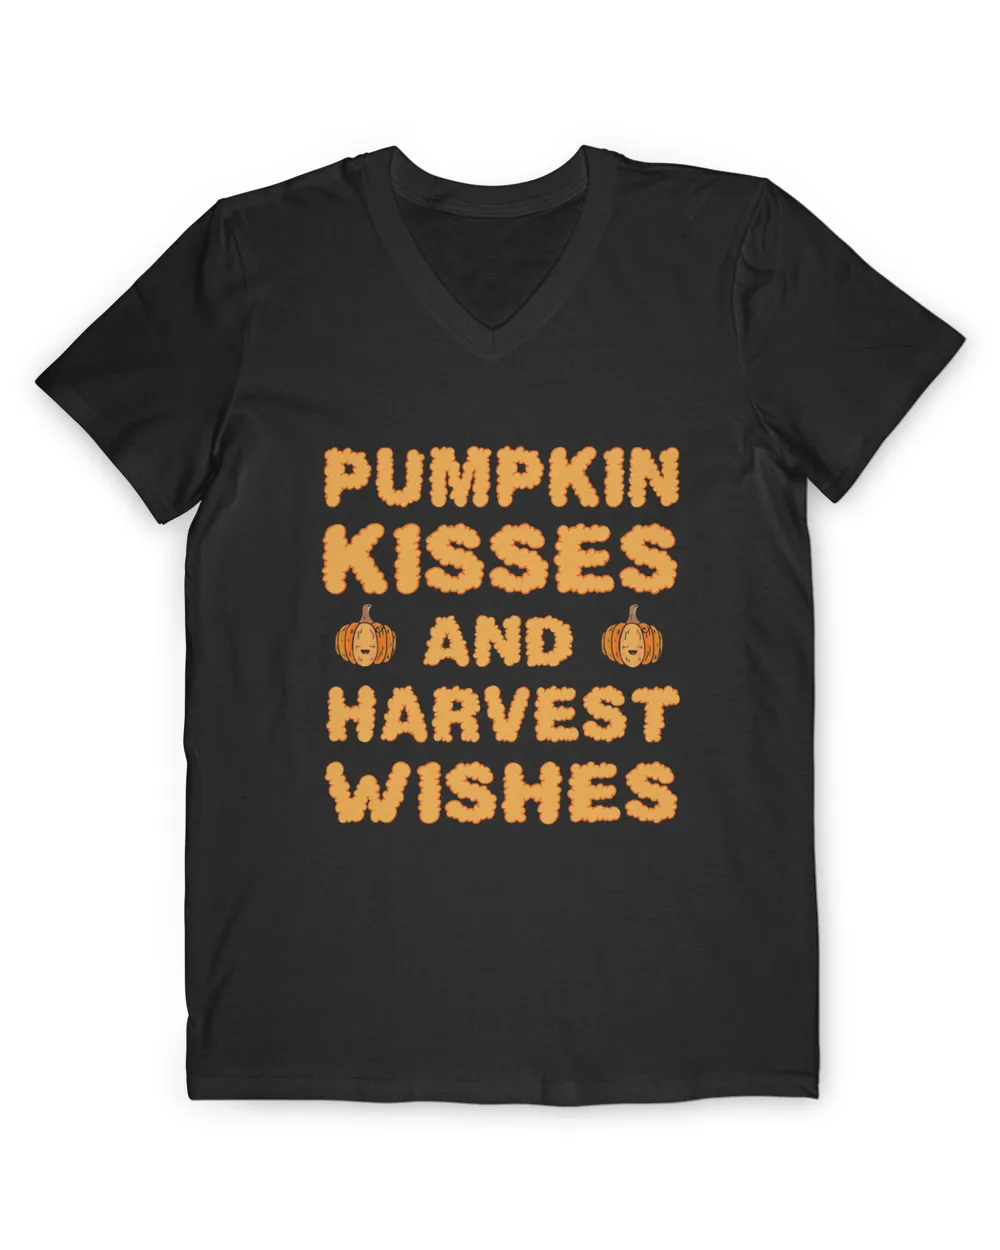 Pumpkin Kisses And Harvest Wishes Gift For Women Men Girls T-Shirt